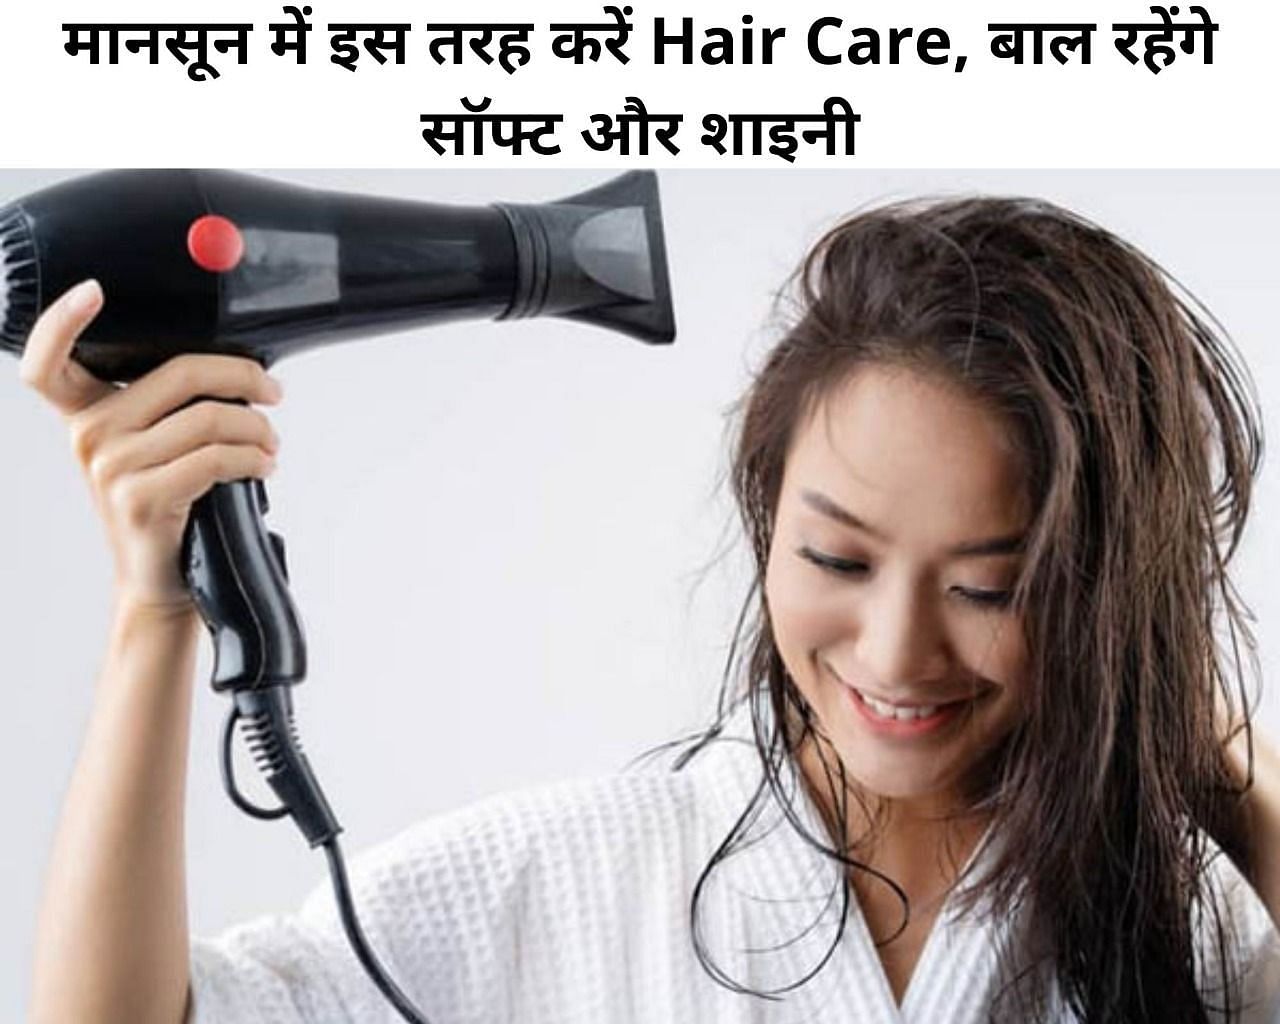 मानसून में इस तरह करें Hair Care, बाल रहेंगे सॉफ्ट और शाइनी (फोटो - sportskeeda hindi)